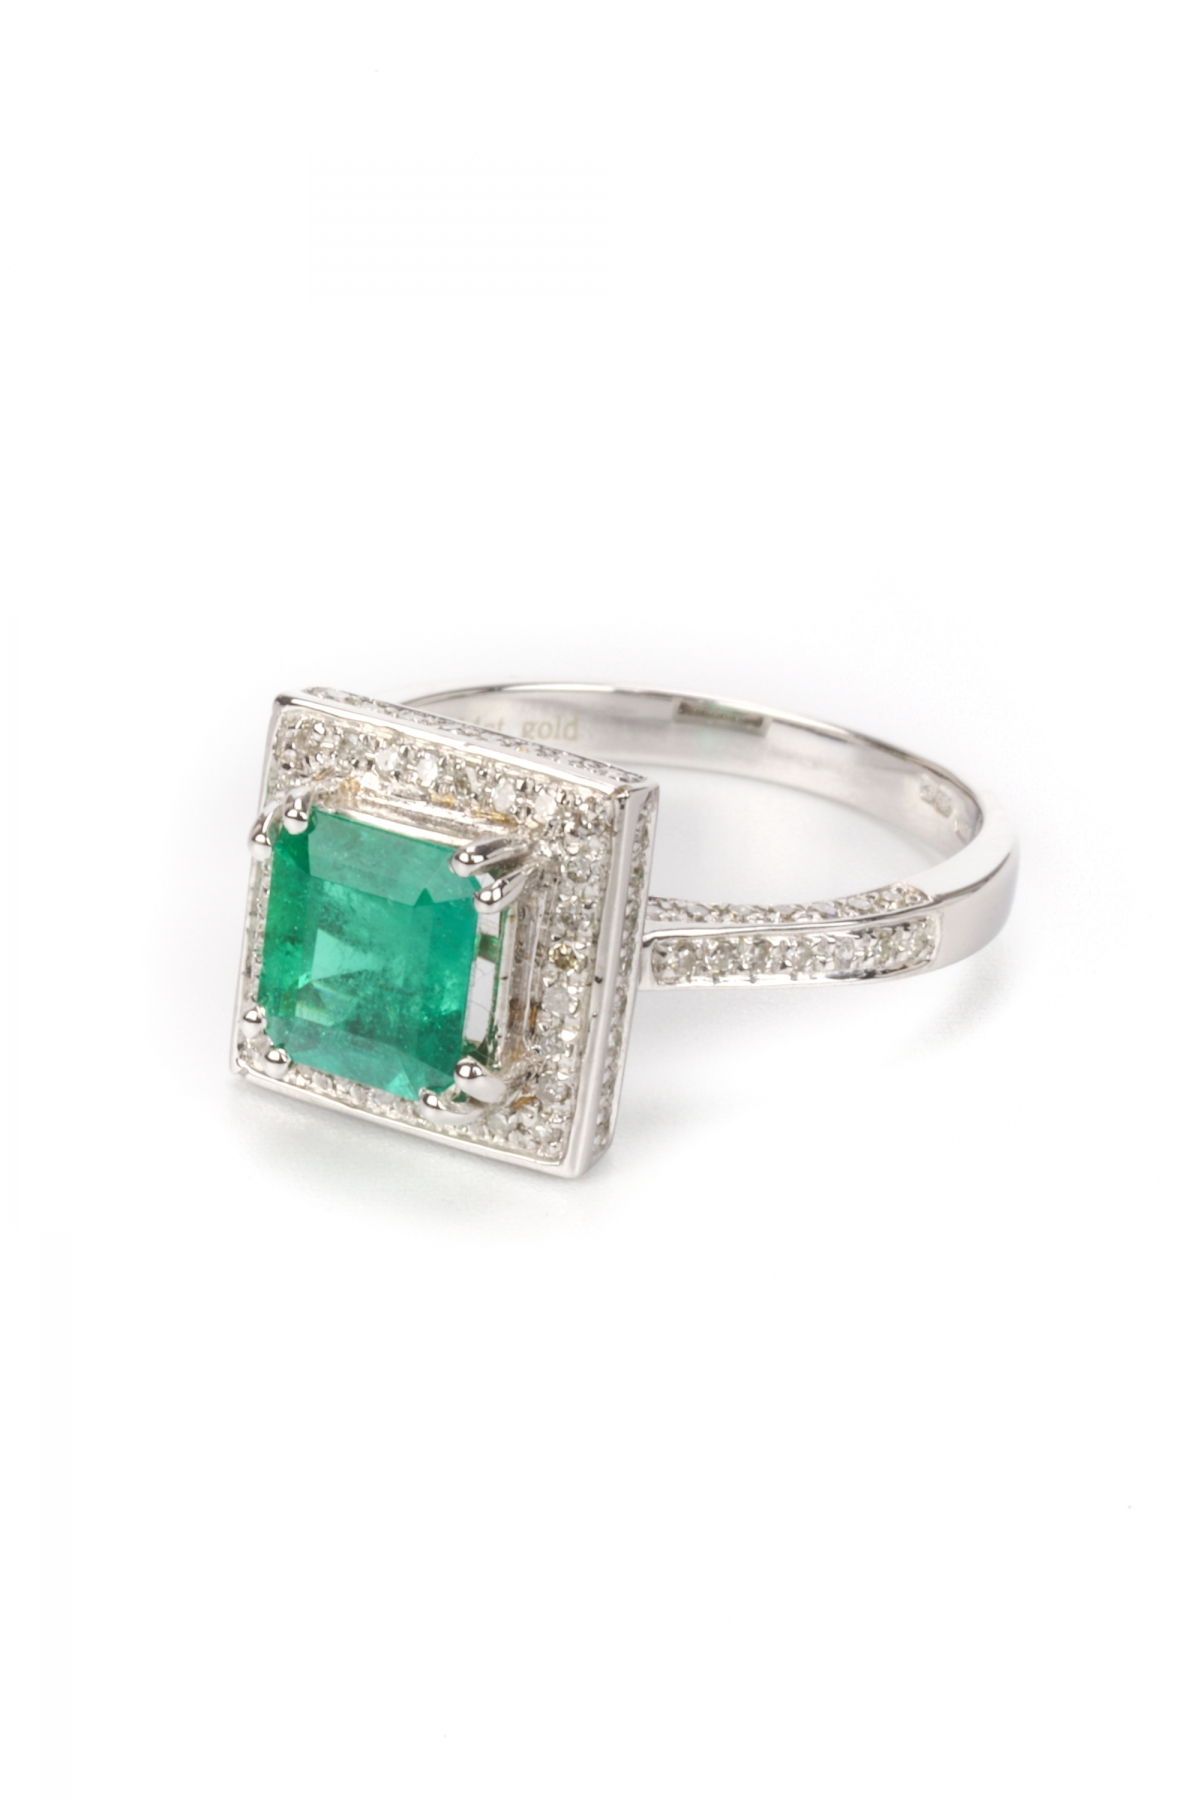 Asscher-Cut Emerald Ring - John Pye Luxury Assets